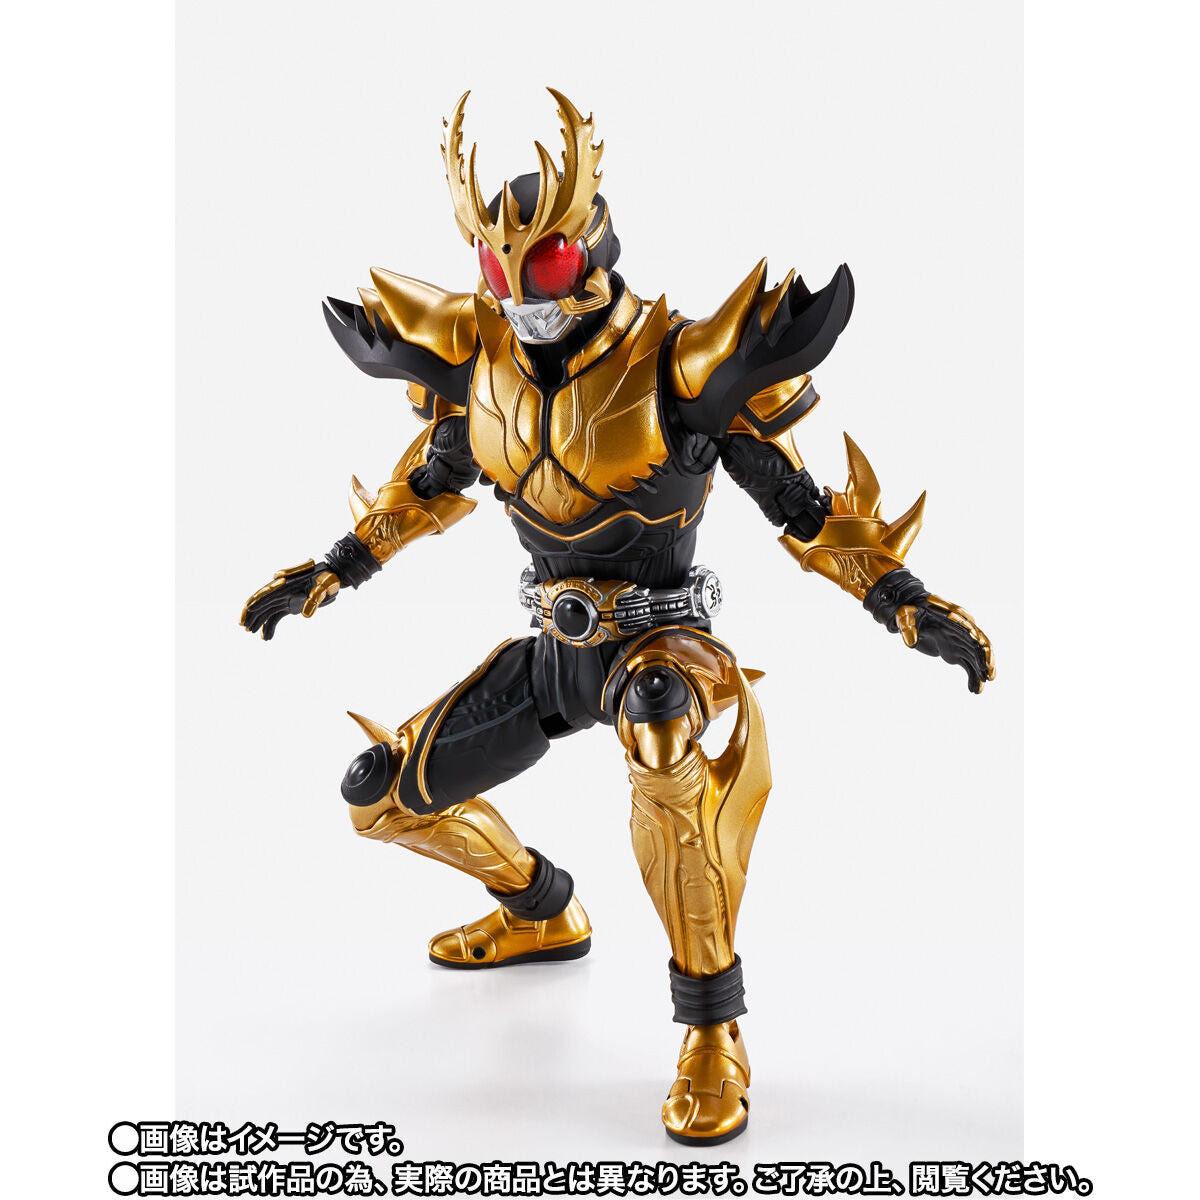 SH Figuarts Masked Rider Kuuga Rising Ultimate